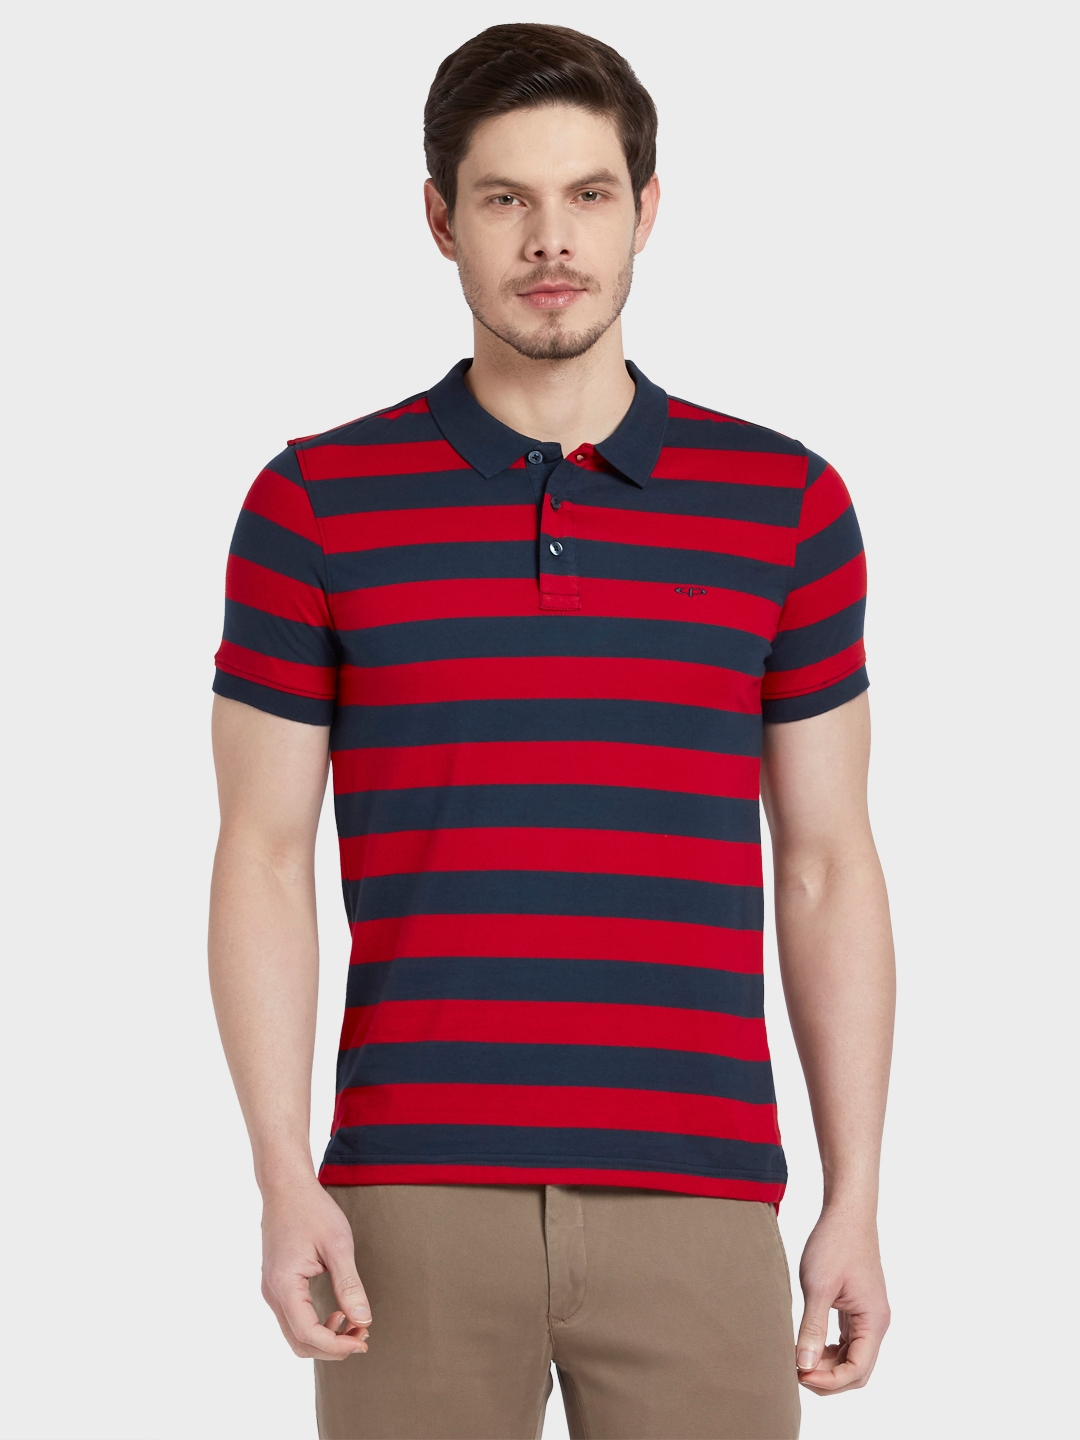 ColorPlus Medium Red T-Shirt